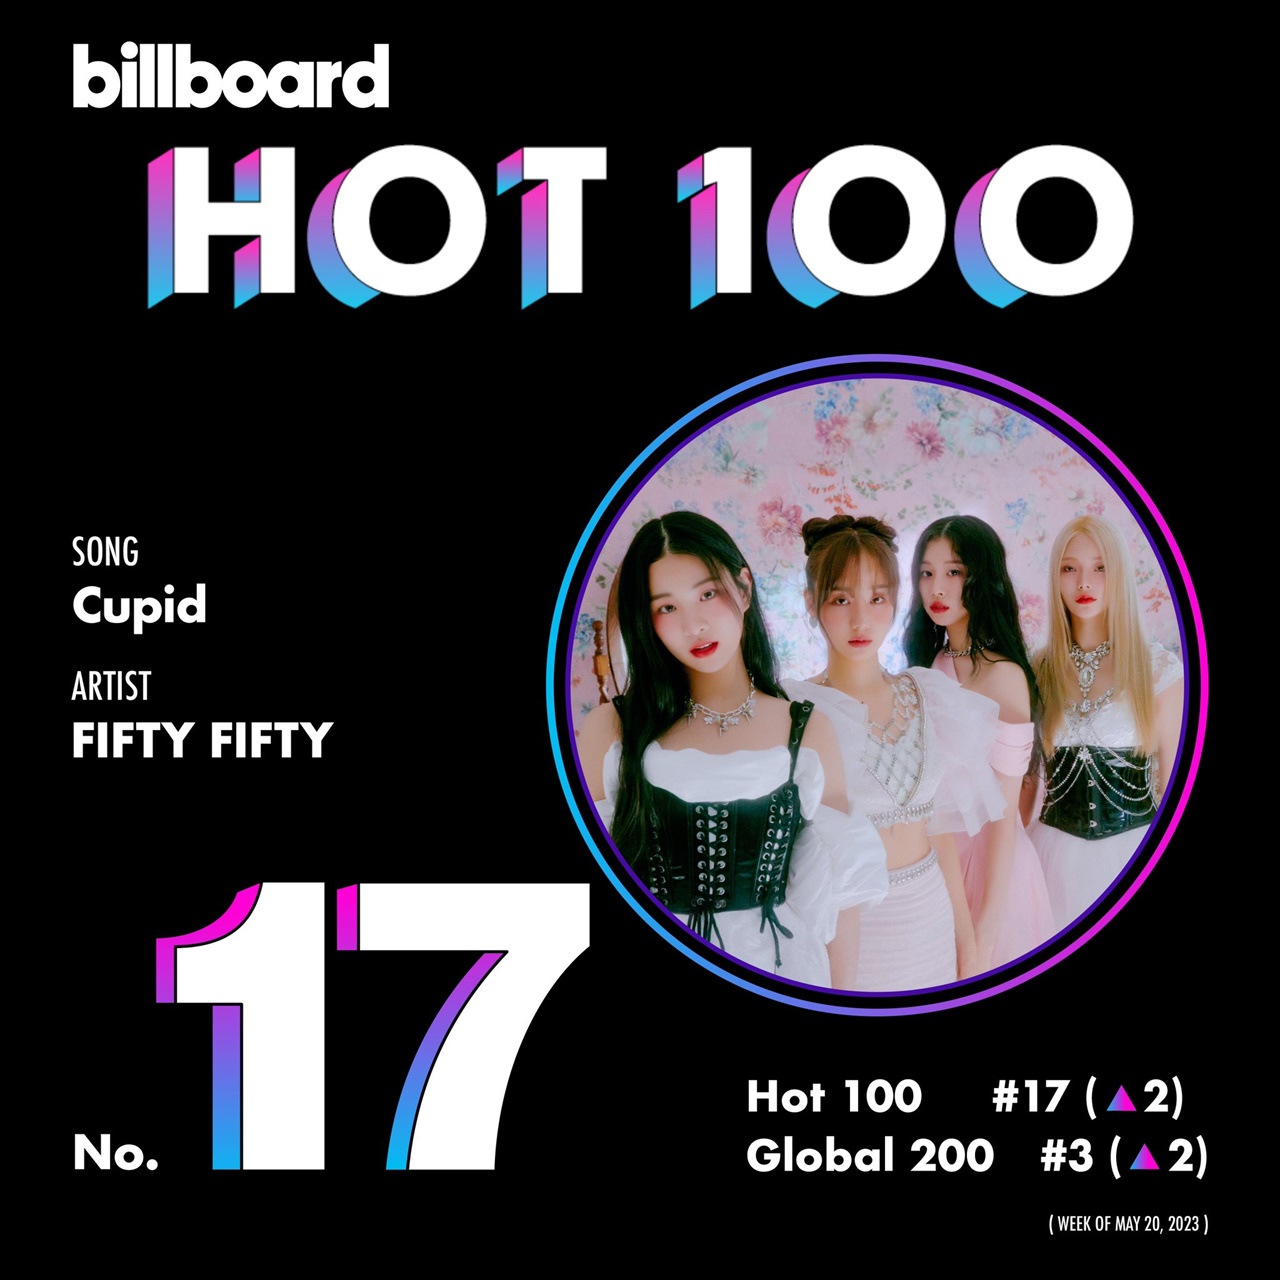  피프티 피프티의 'CUPID'가 5월 3주차 빌보드 핫 100 차트 17위에 올랐다.